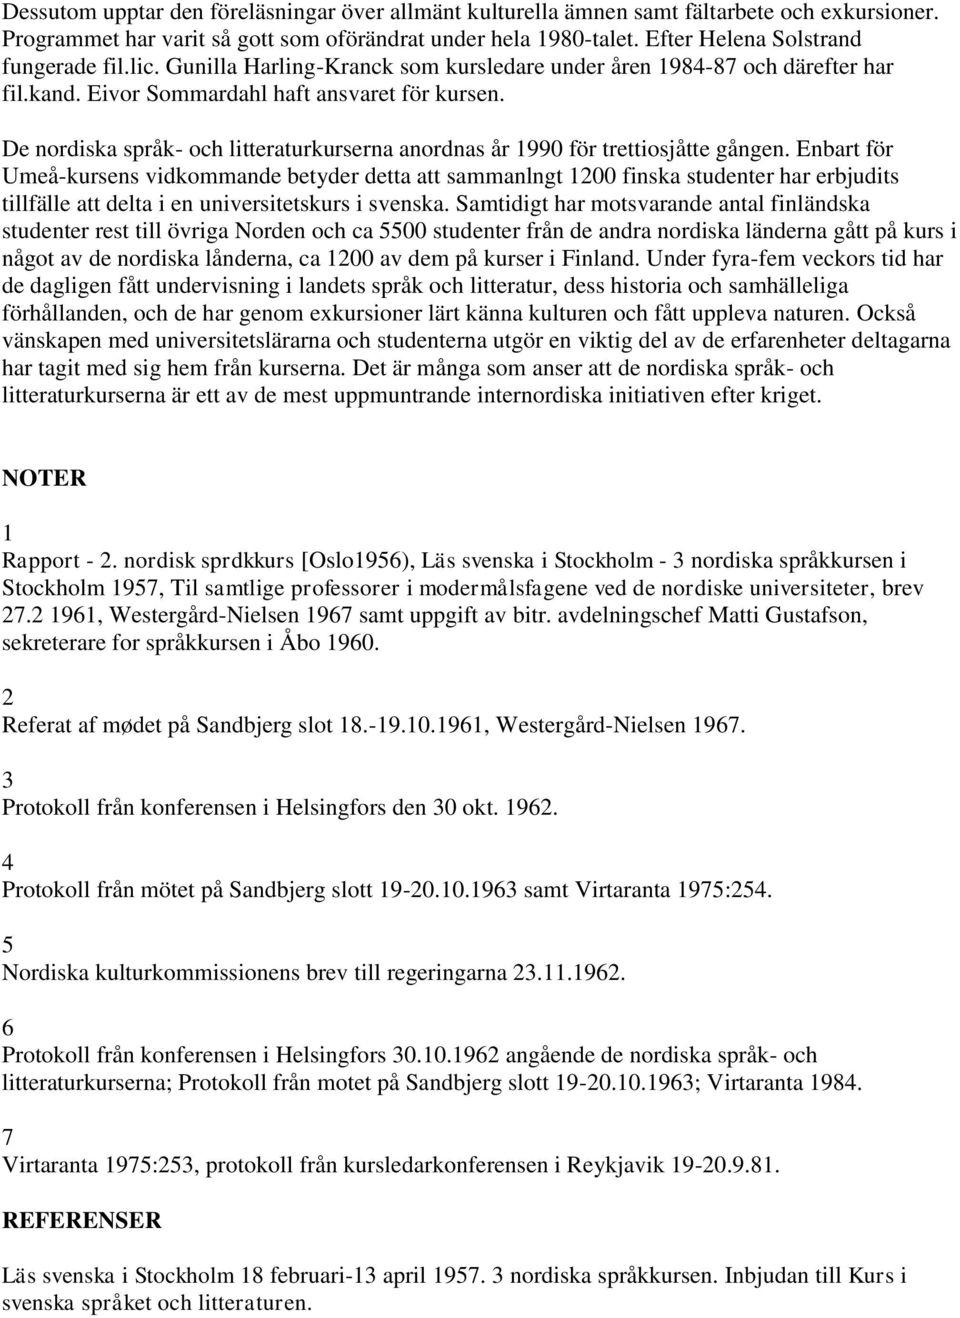 De nordiska språk- och litteraturkurserna anordnas år 1990 för trettiosjåtte gången.